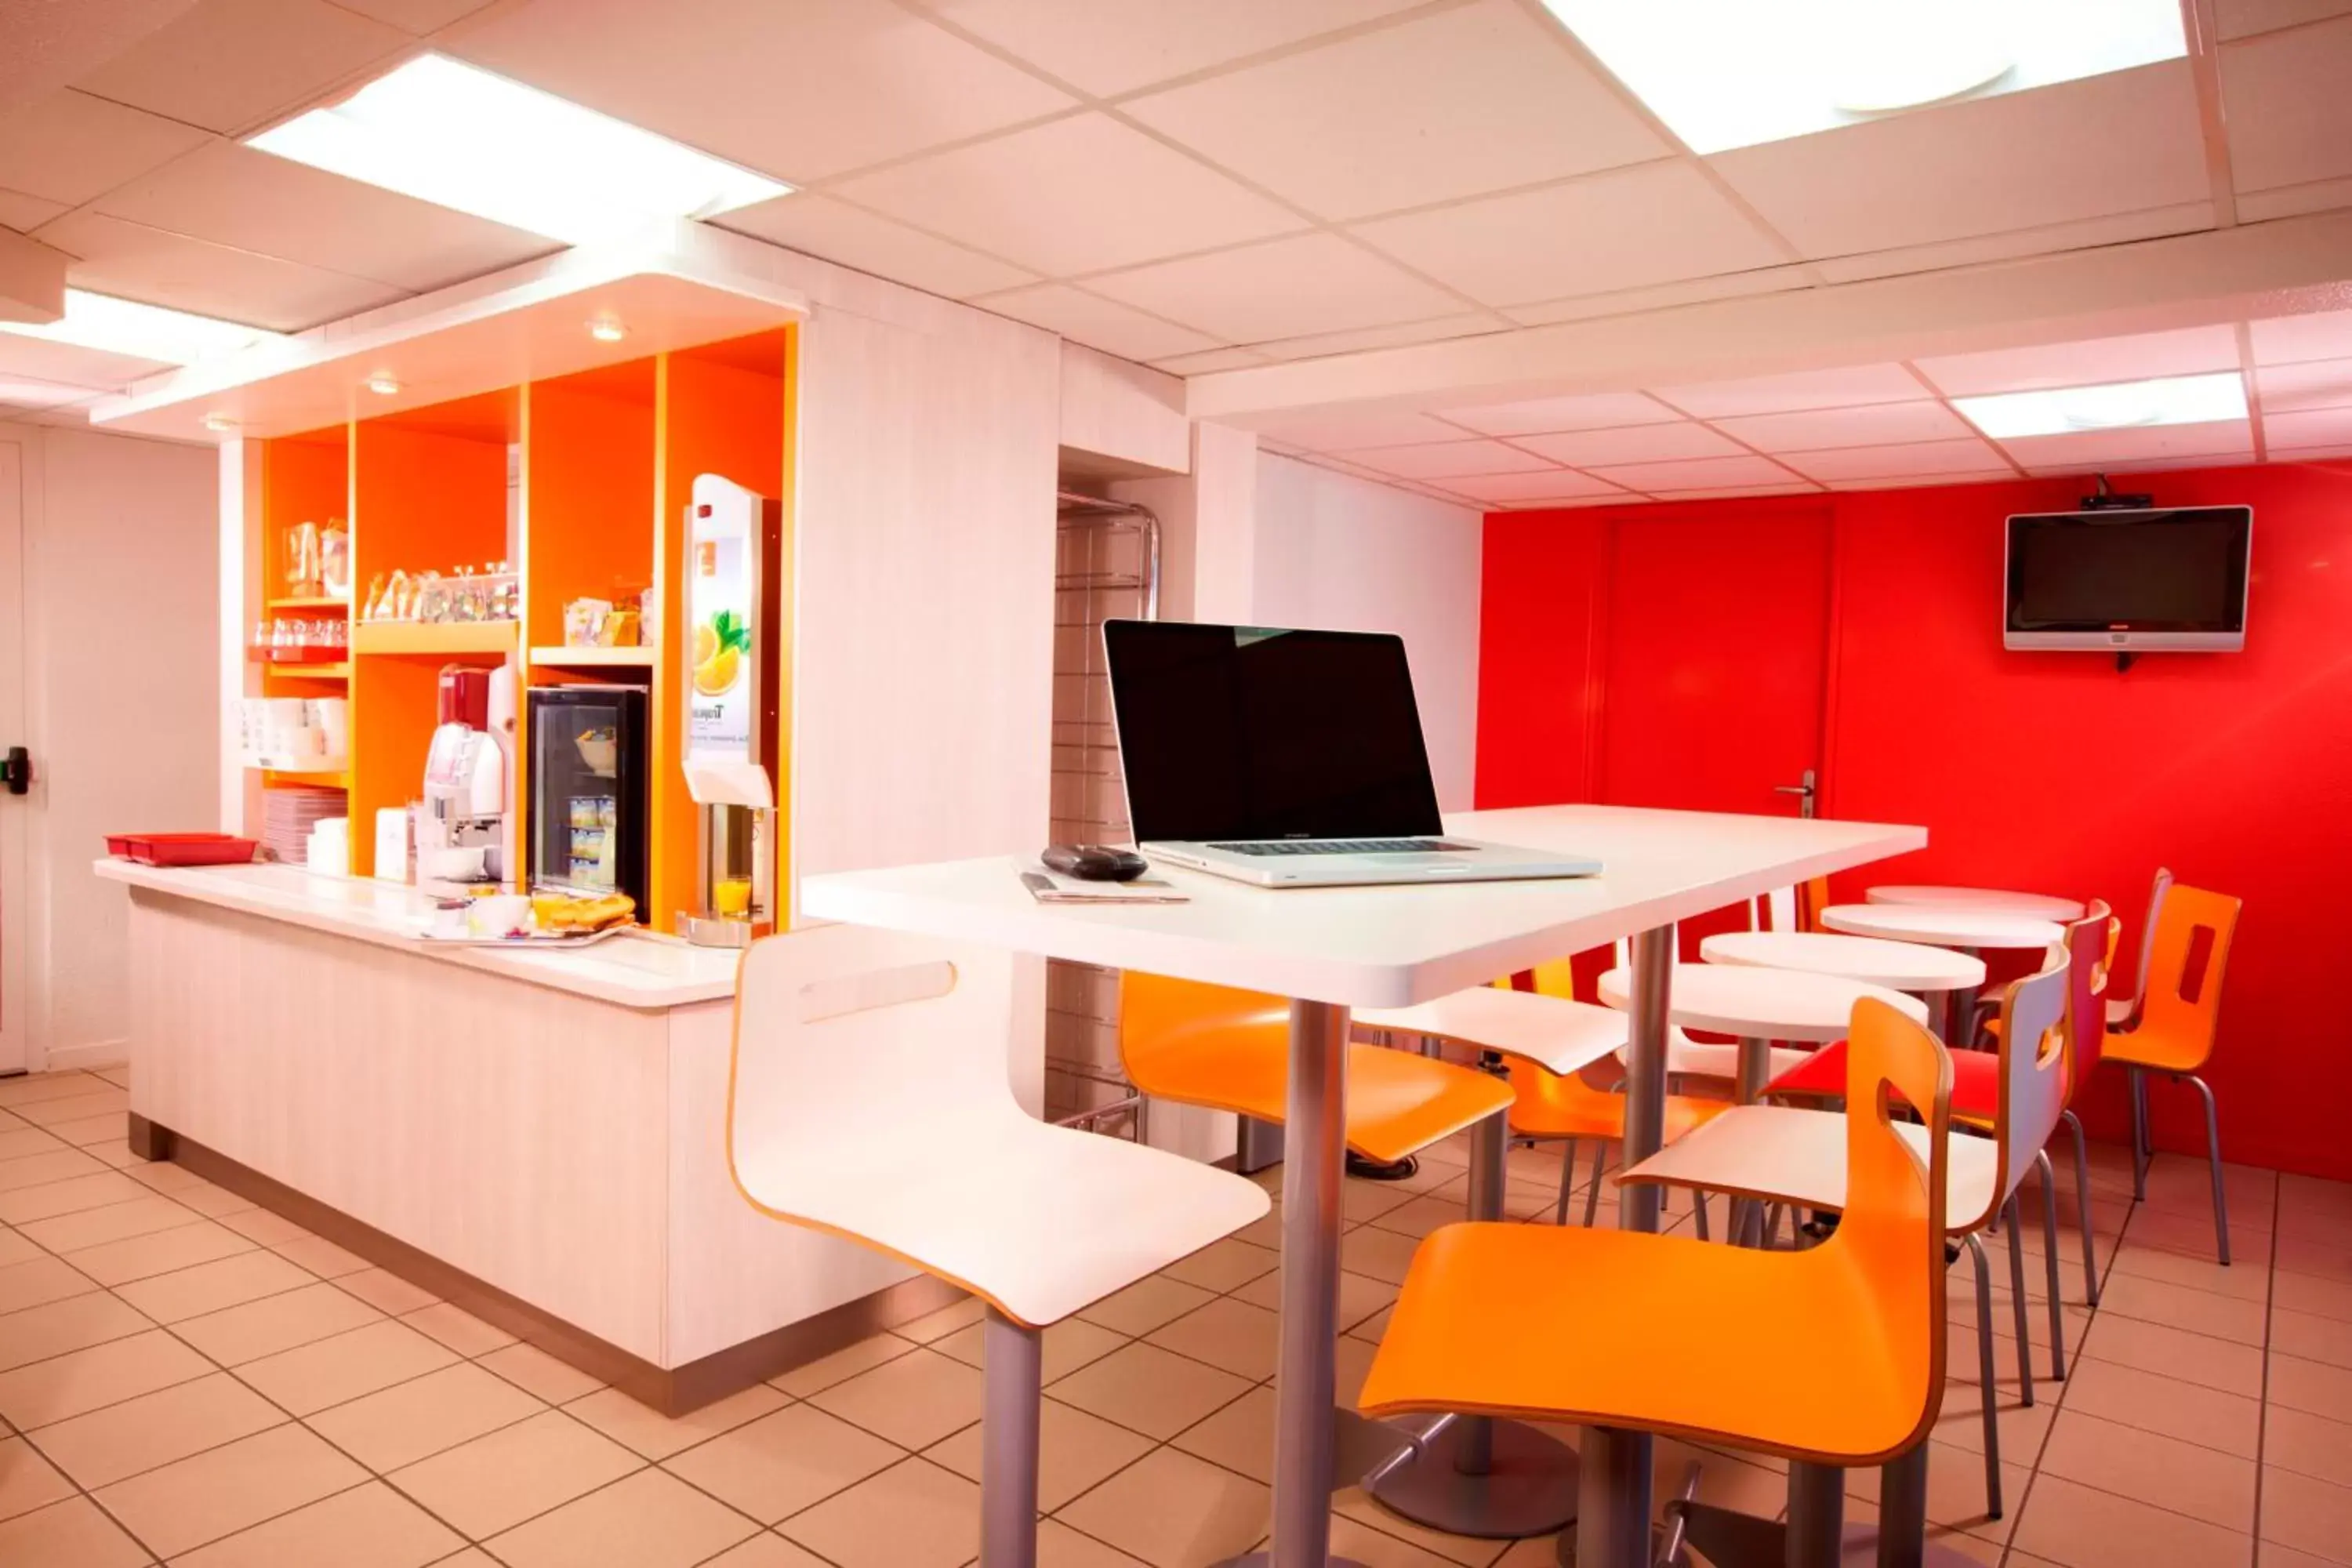 Restaurant/places to eat in Premiere Classe Lille - Villeneuve d’Ascq - Stade Pierre Mauroy